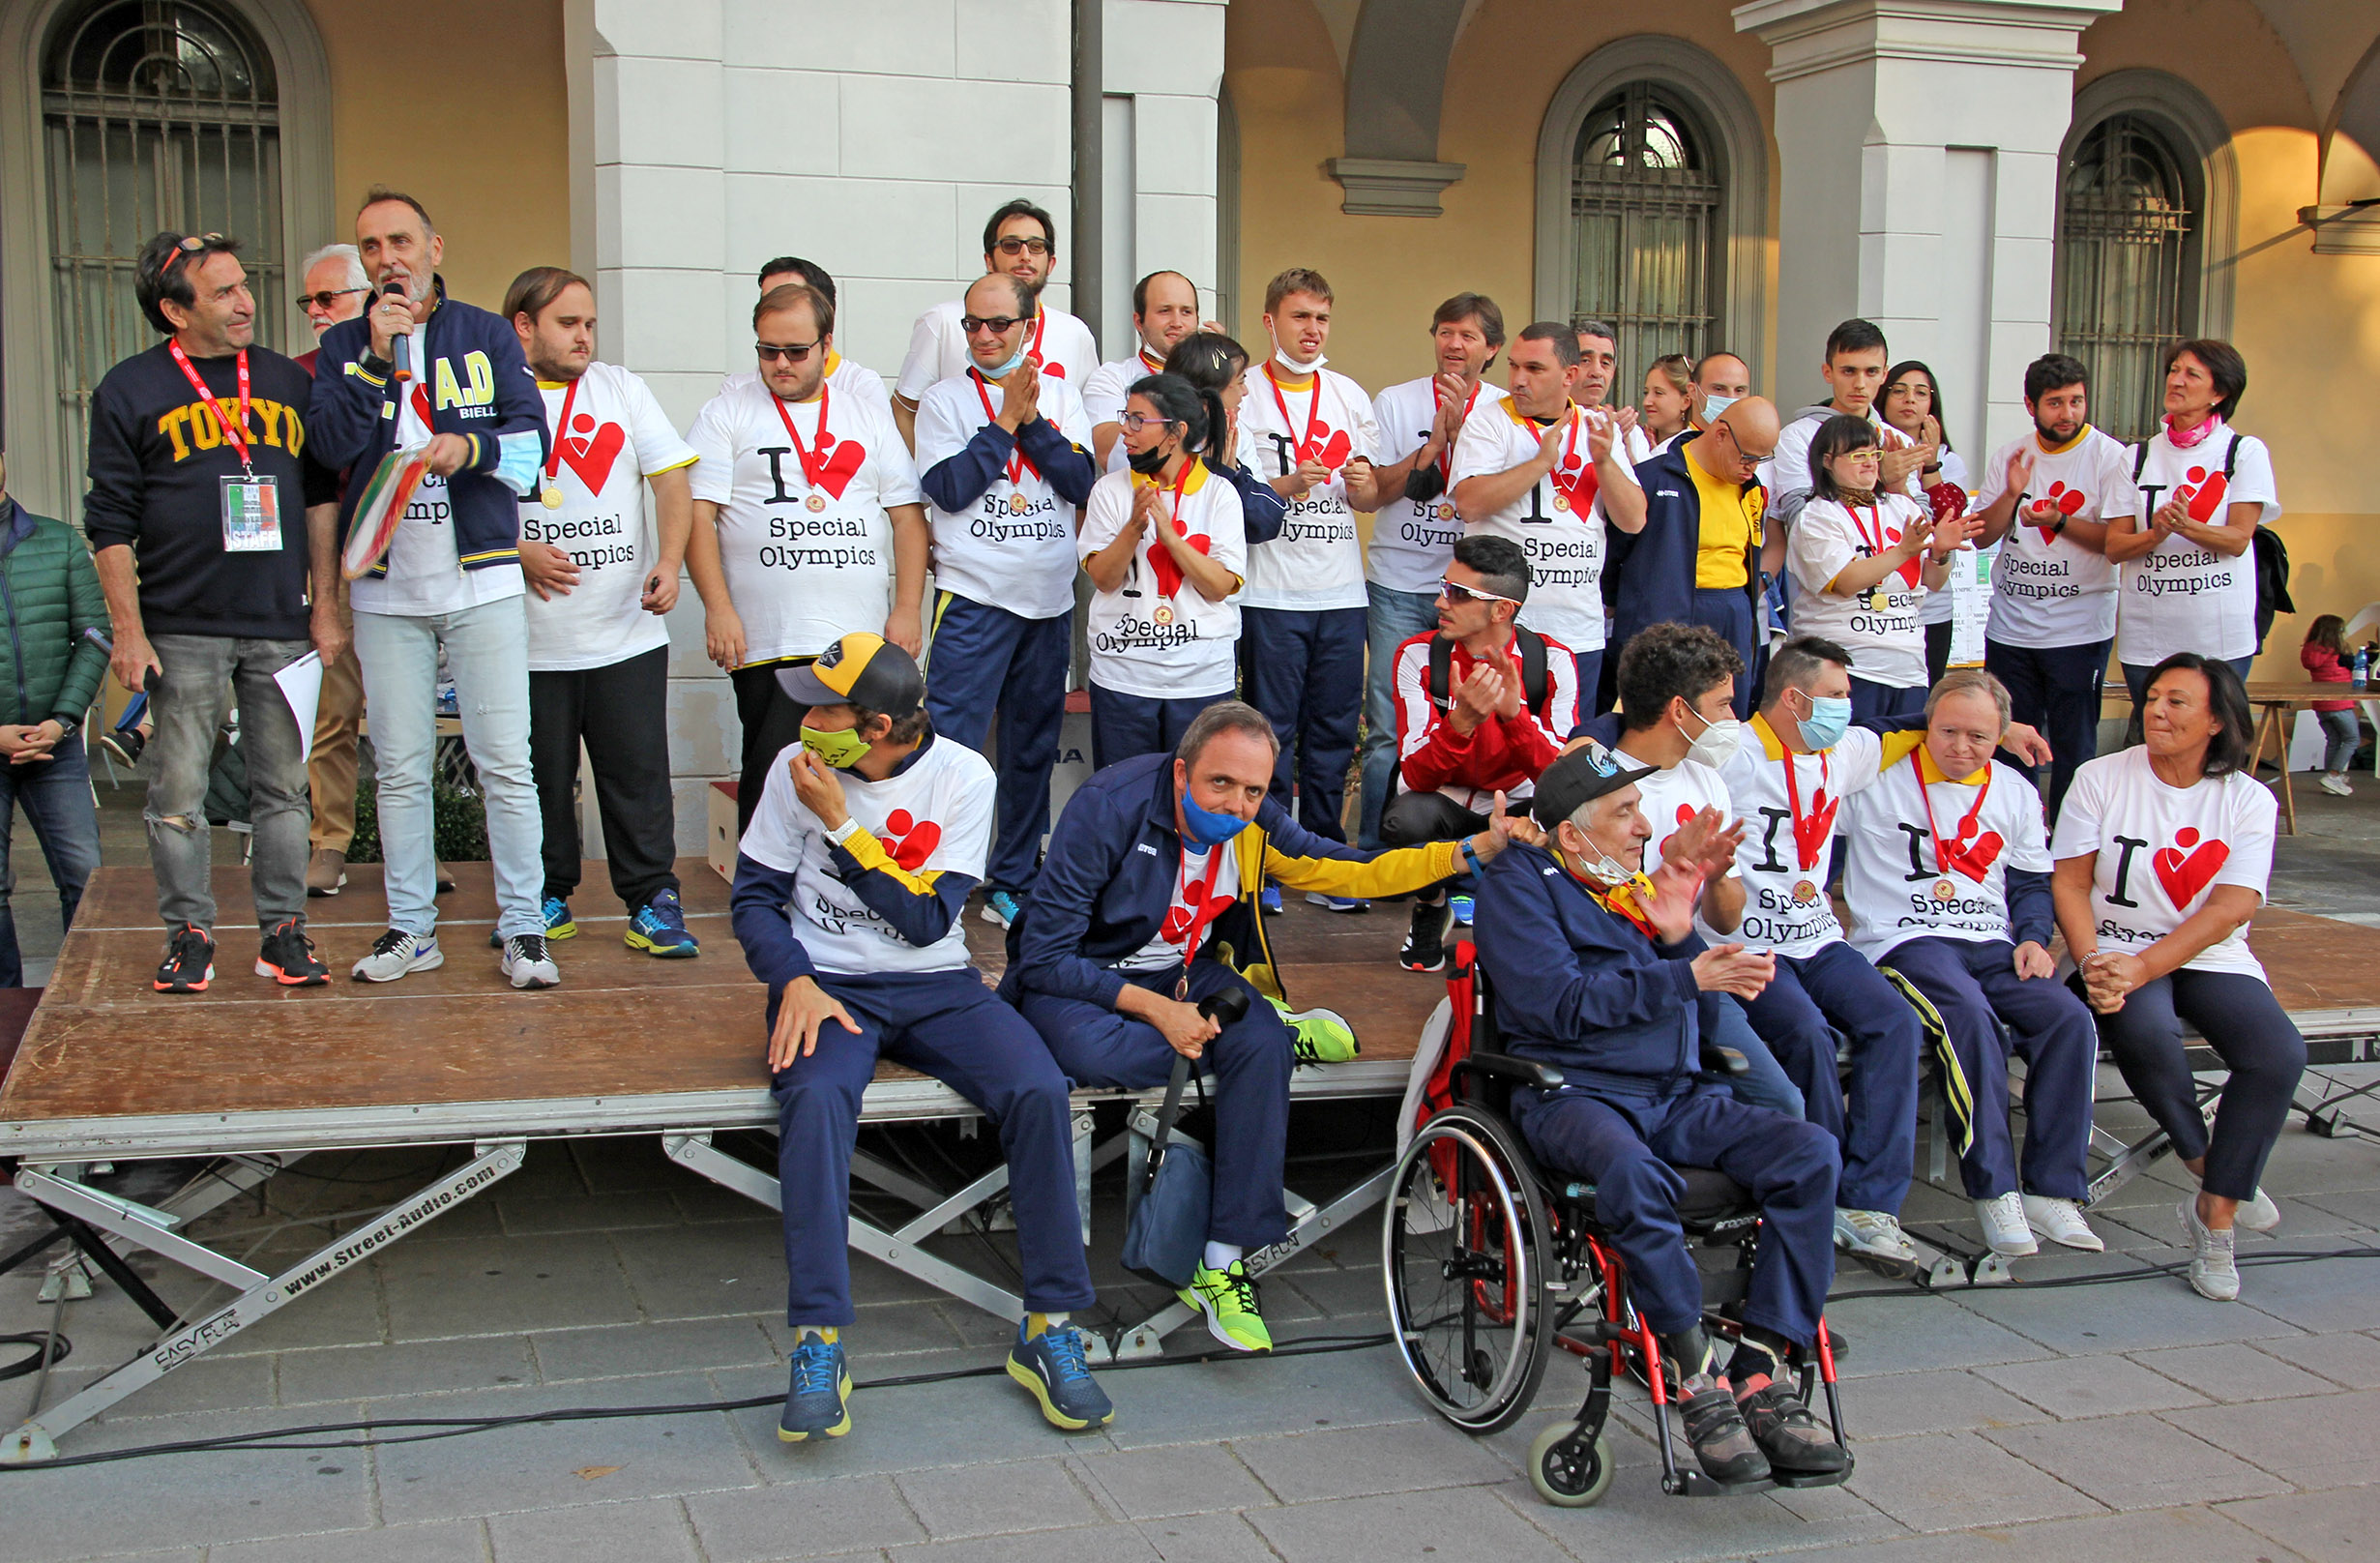 La premiazione della gara degli Special Olympics del circuito città di Biella